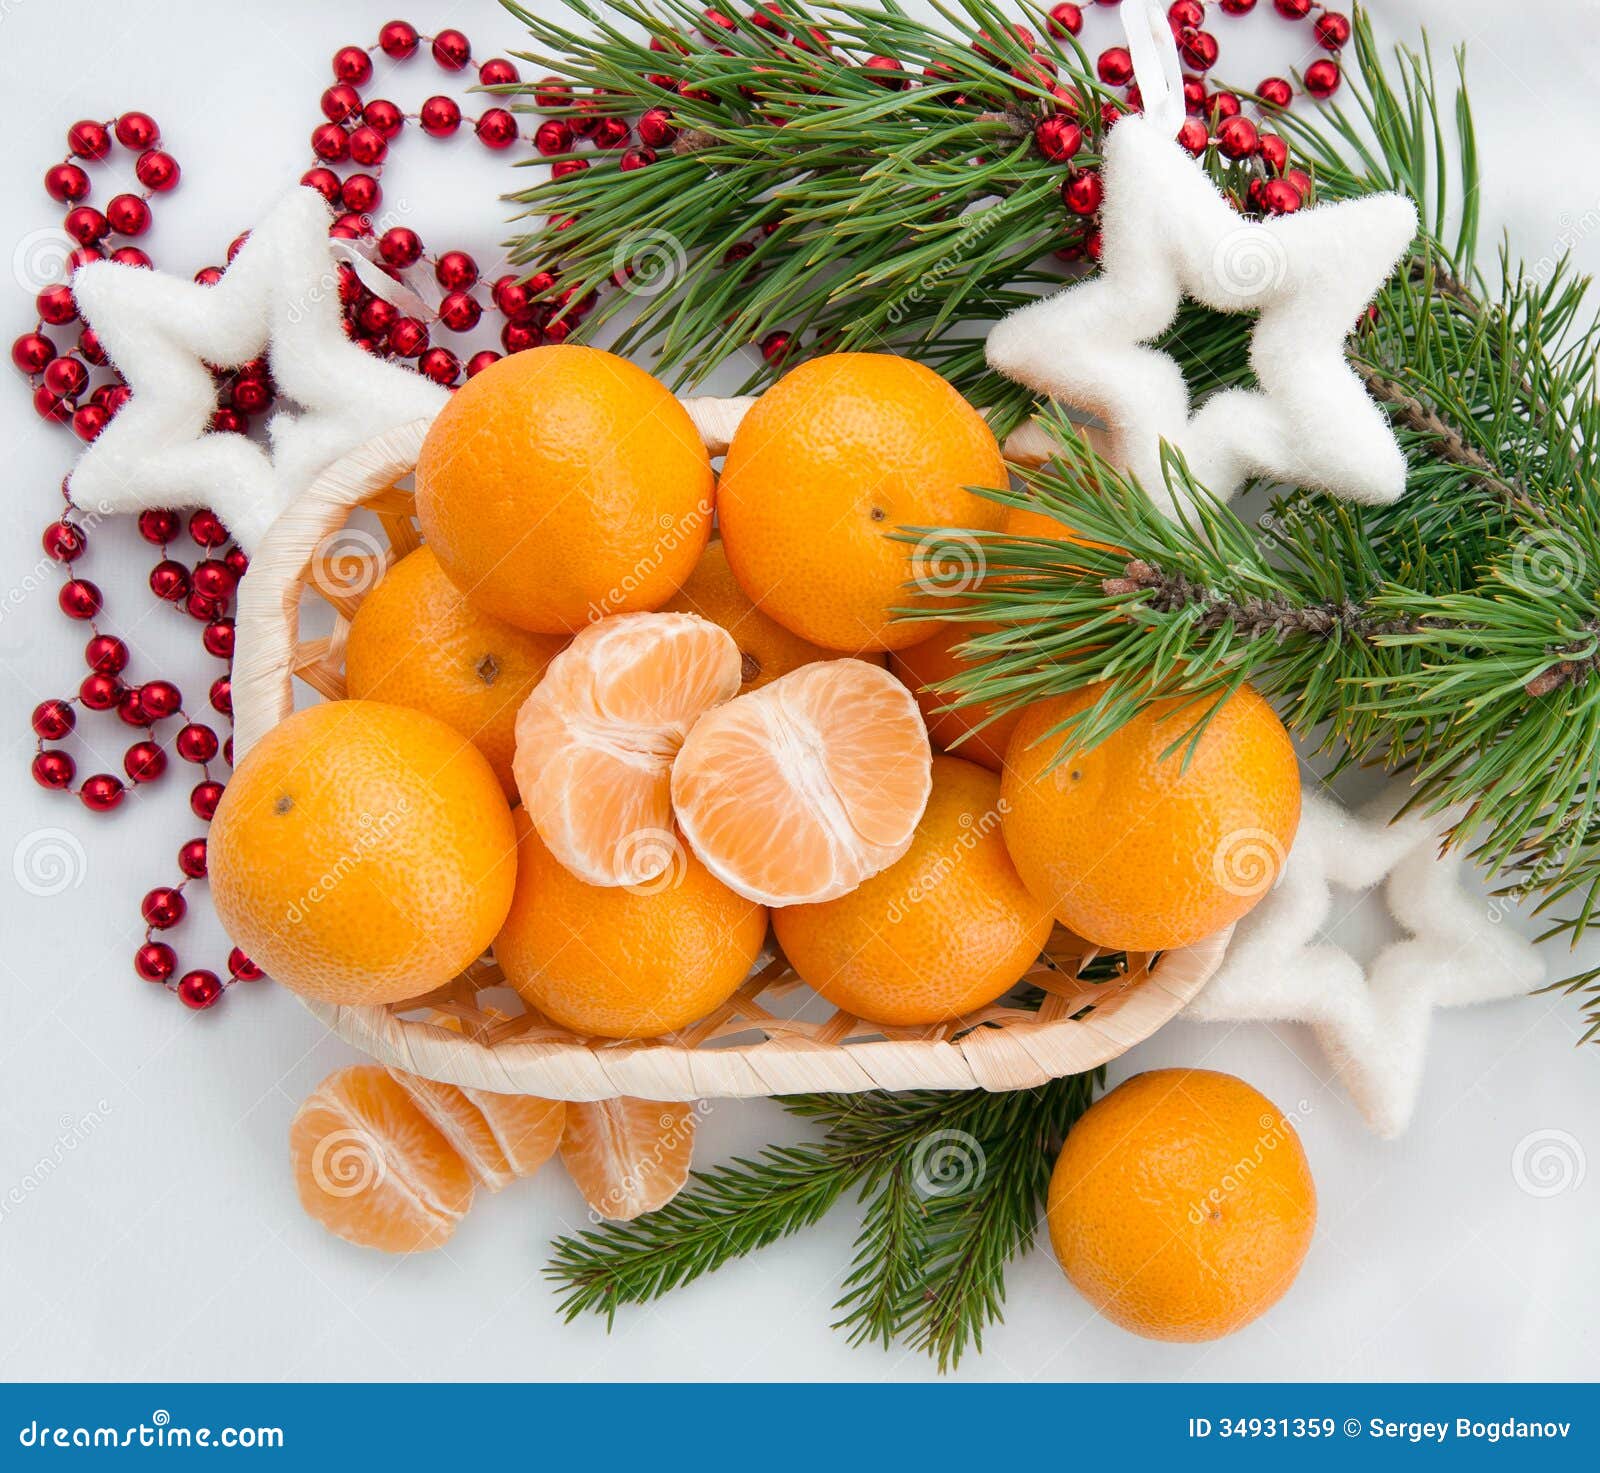 Мандарины оливье. Мандарины новый год. Новогодняя тарелка с мандаринами. Новогодний стол с мандаринами и Оливье. Мандарины на снегу.